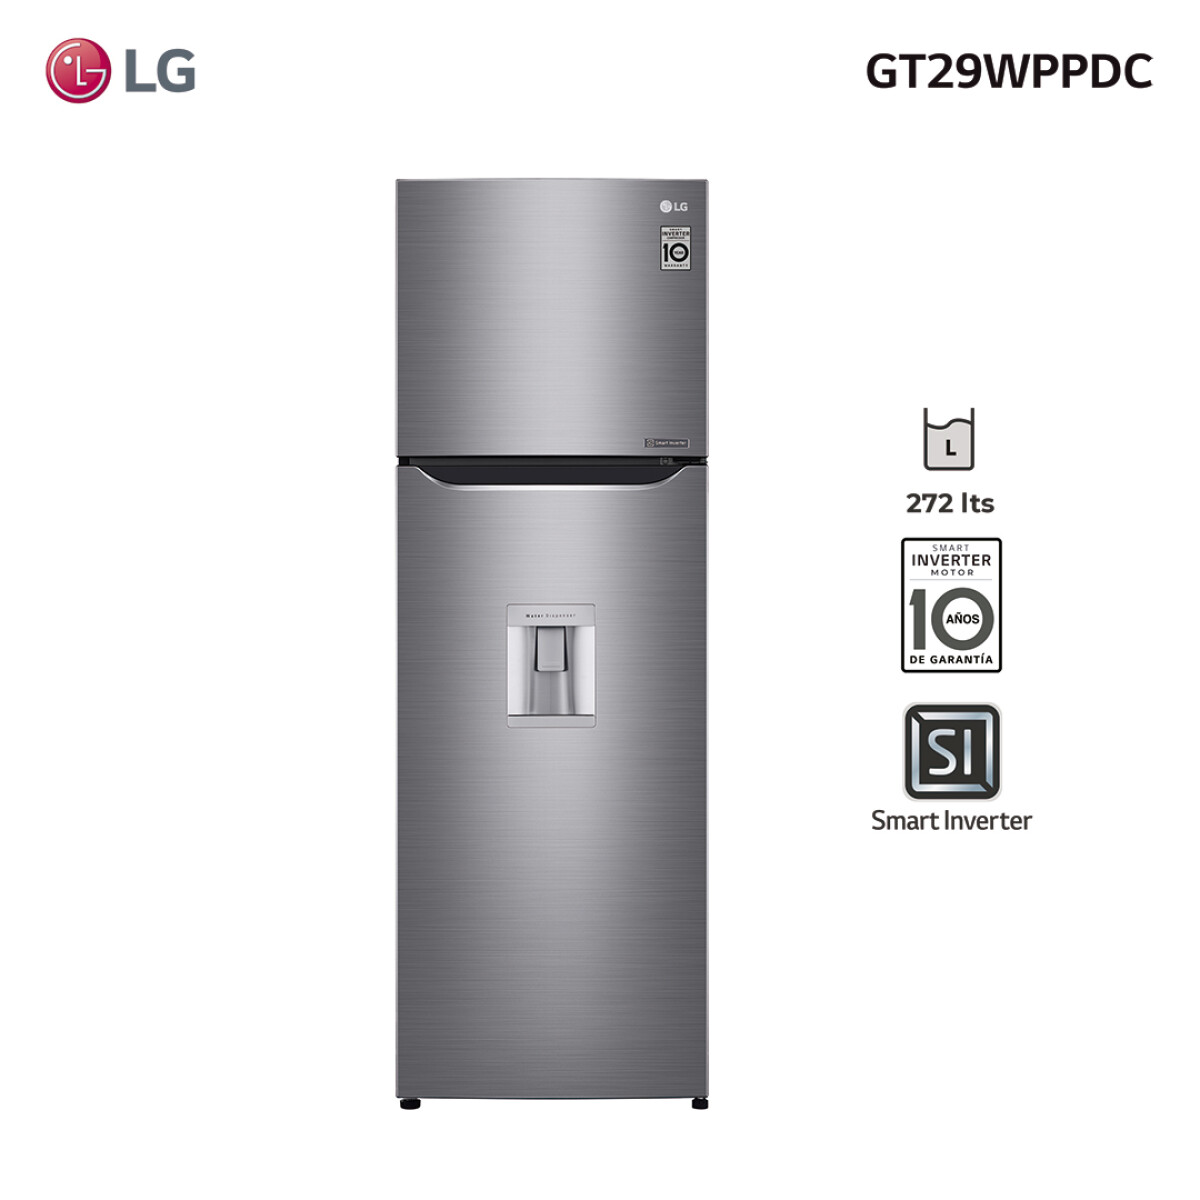 Refrigerador inverter 272L GT29WPPDC LG 